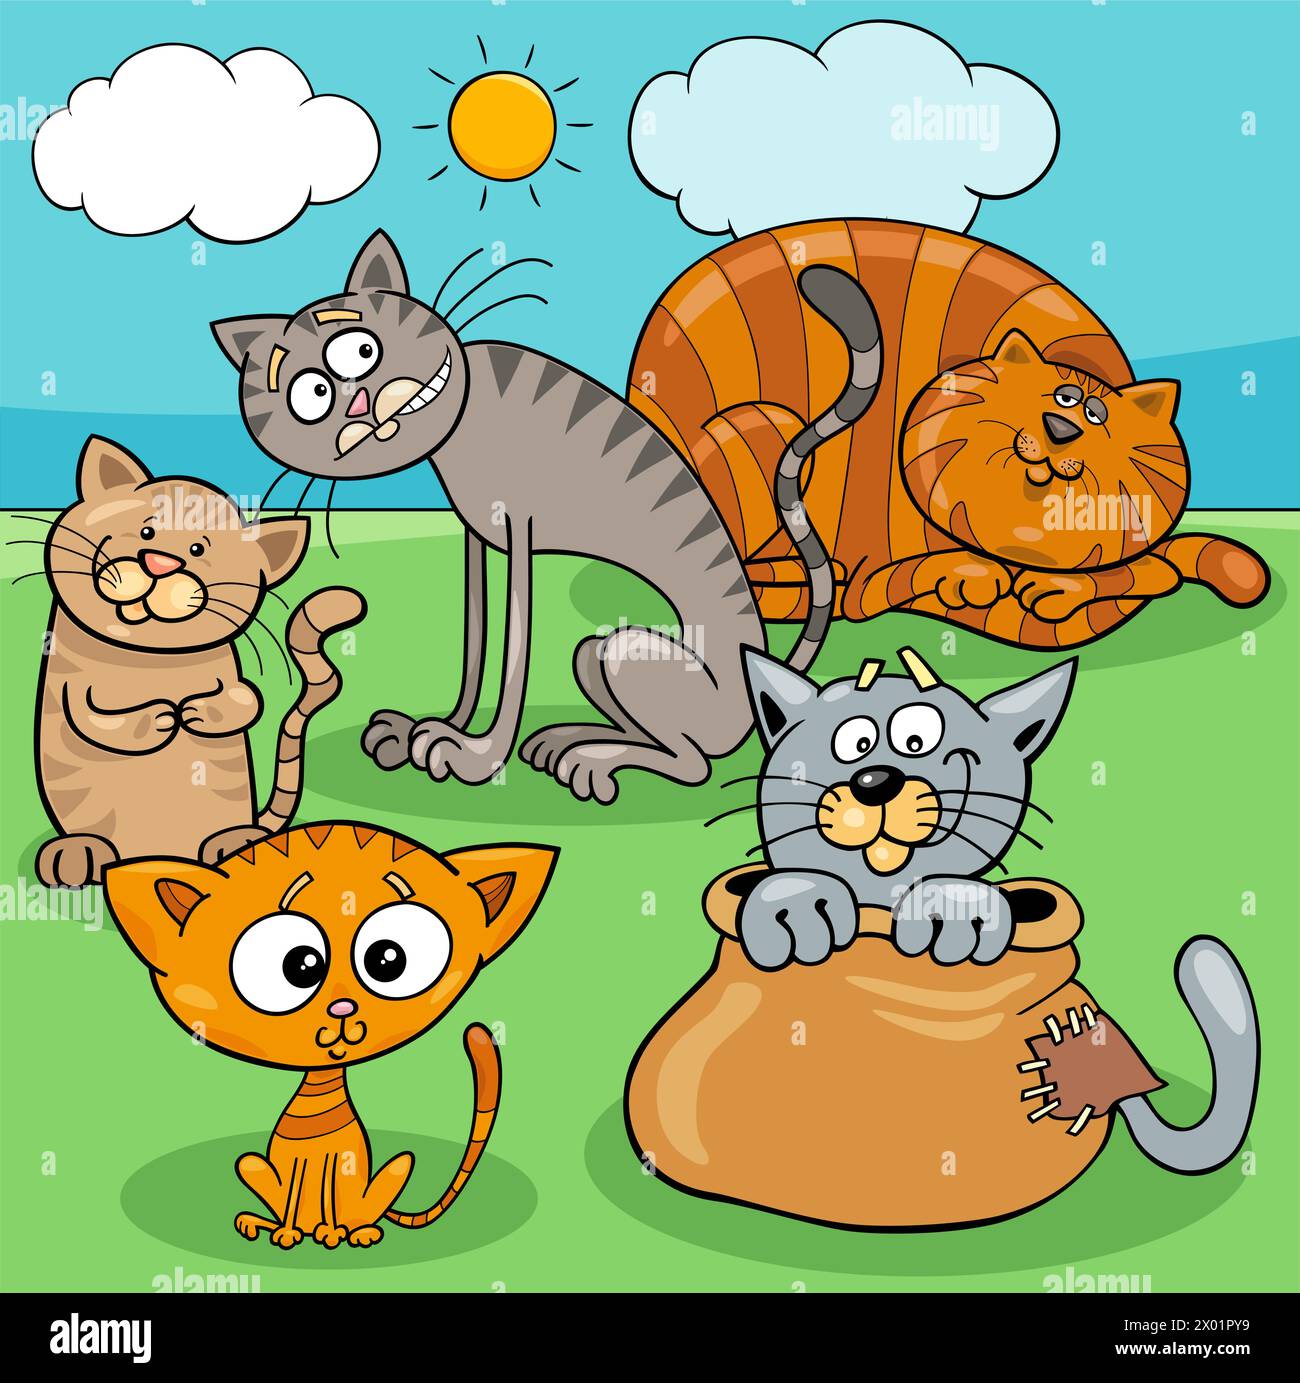 Illustration de dessins animés de chats et chatons drôle groupe de caractères animaux Illustration de Vecteur